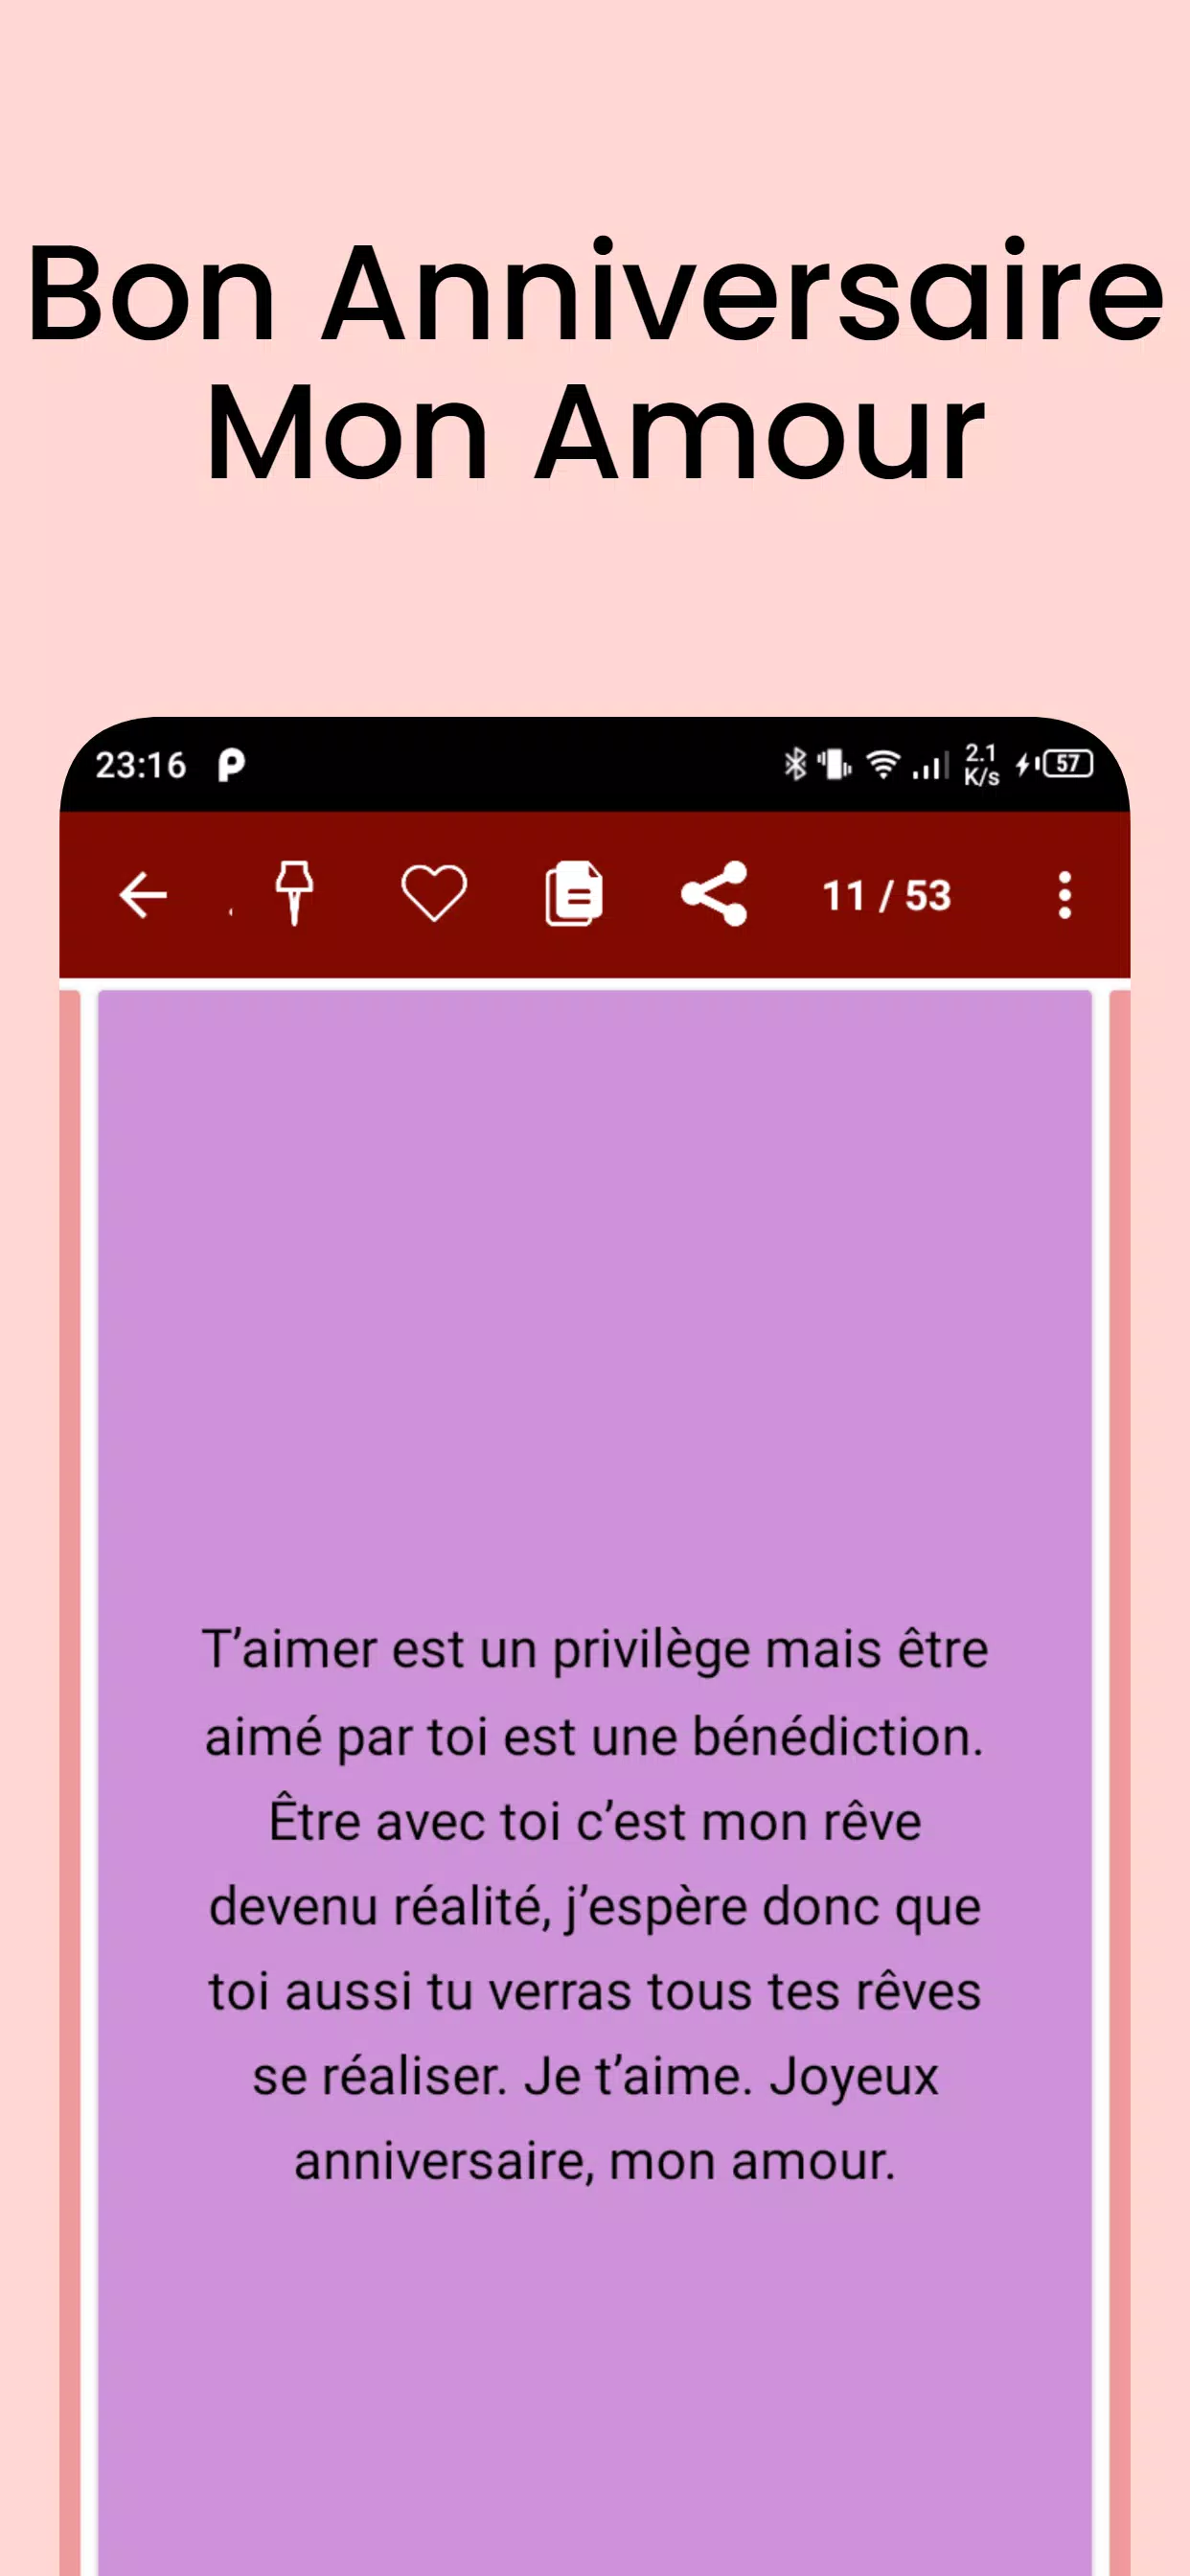 Bon Anniversaire Mon Amour For Android Apk Download